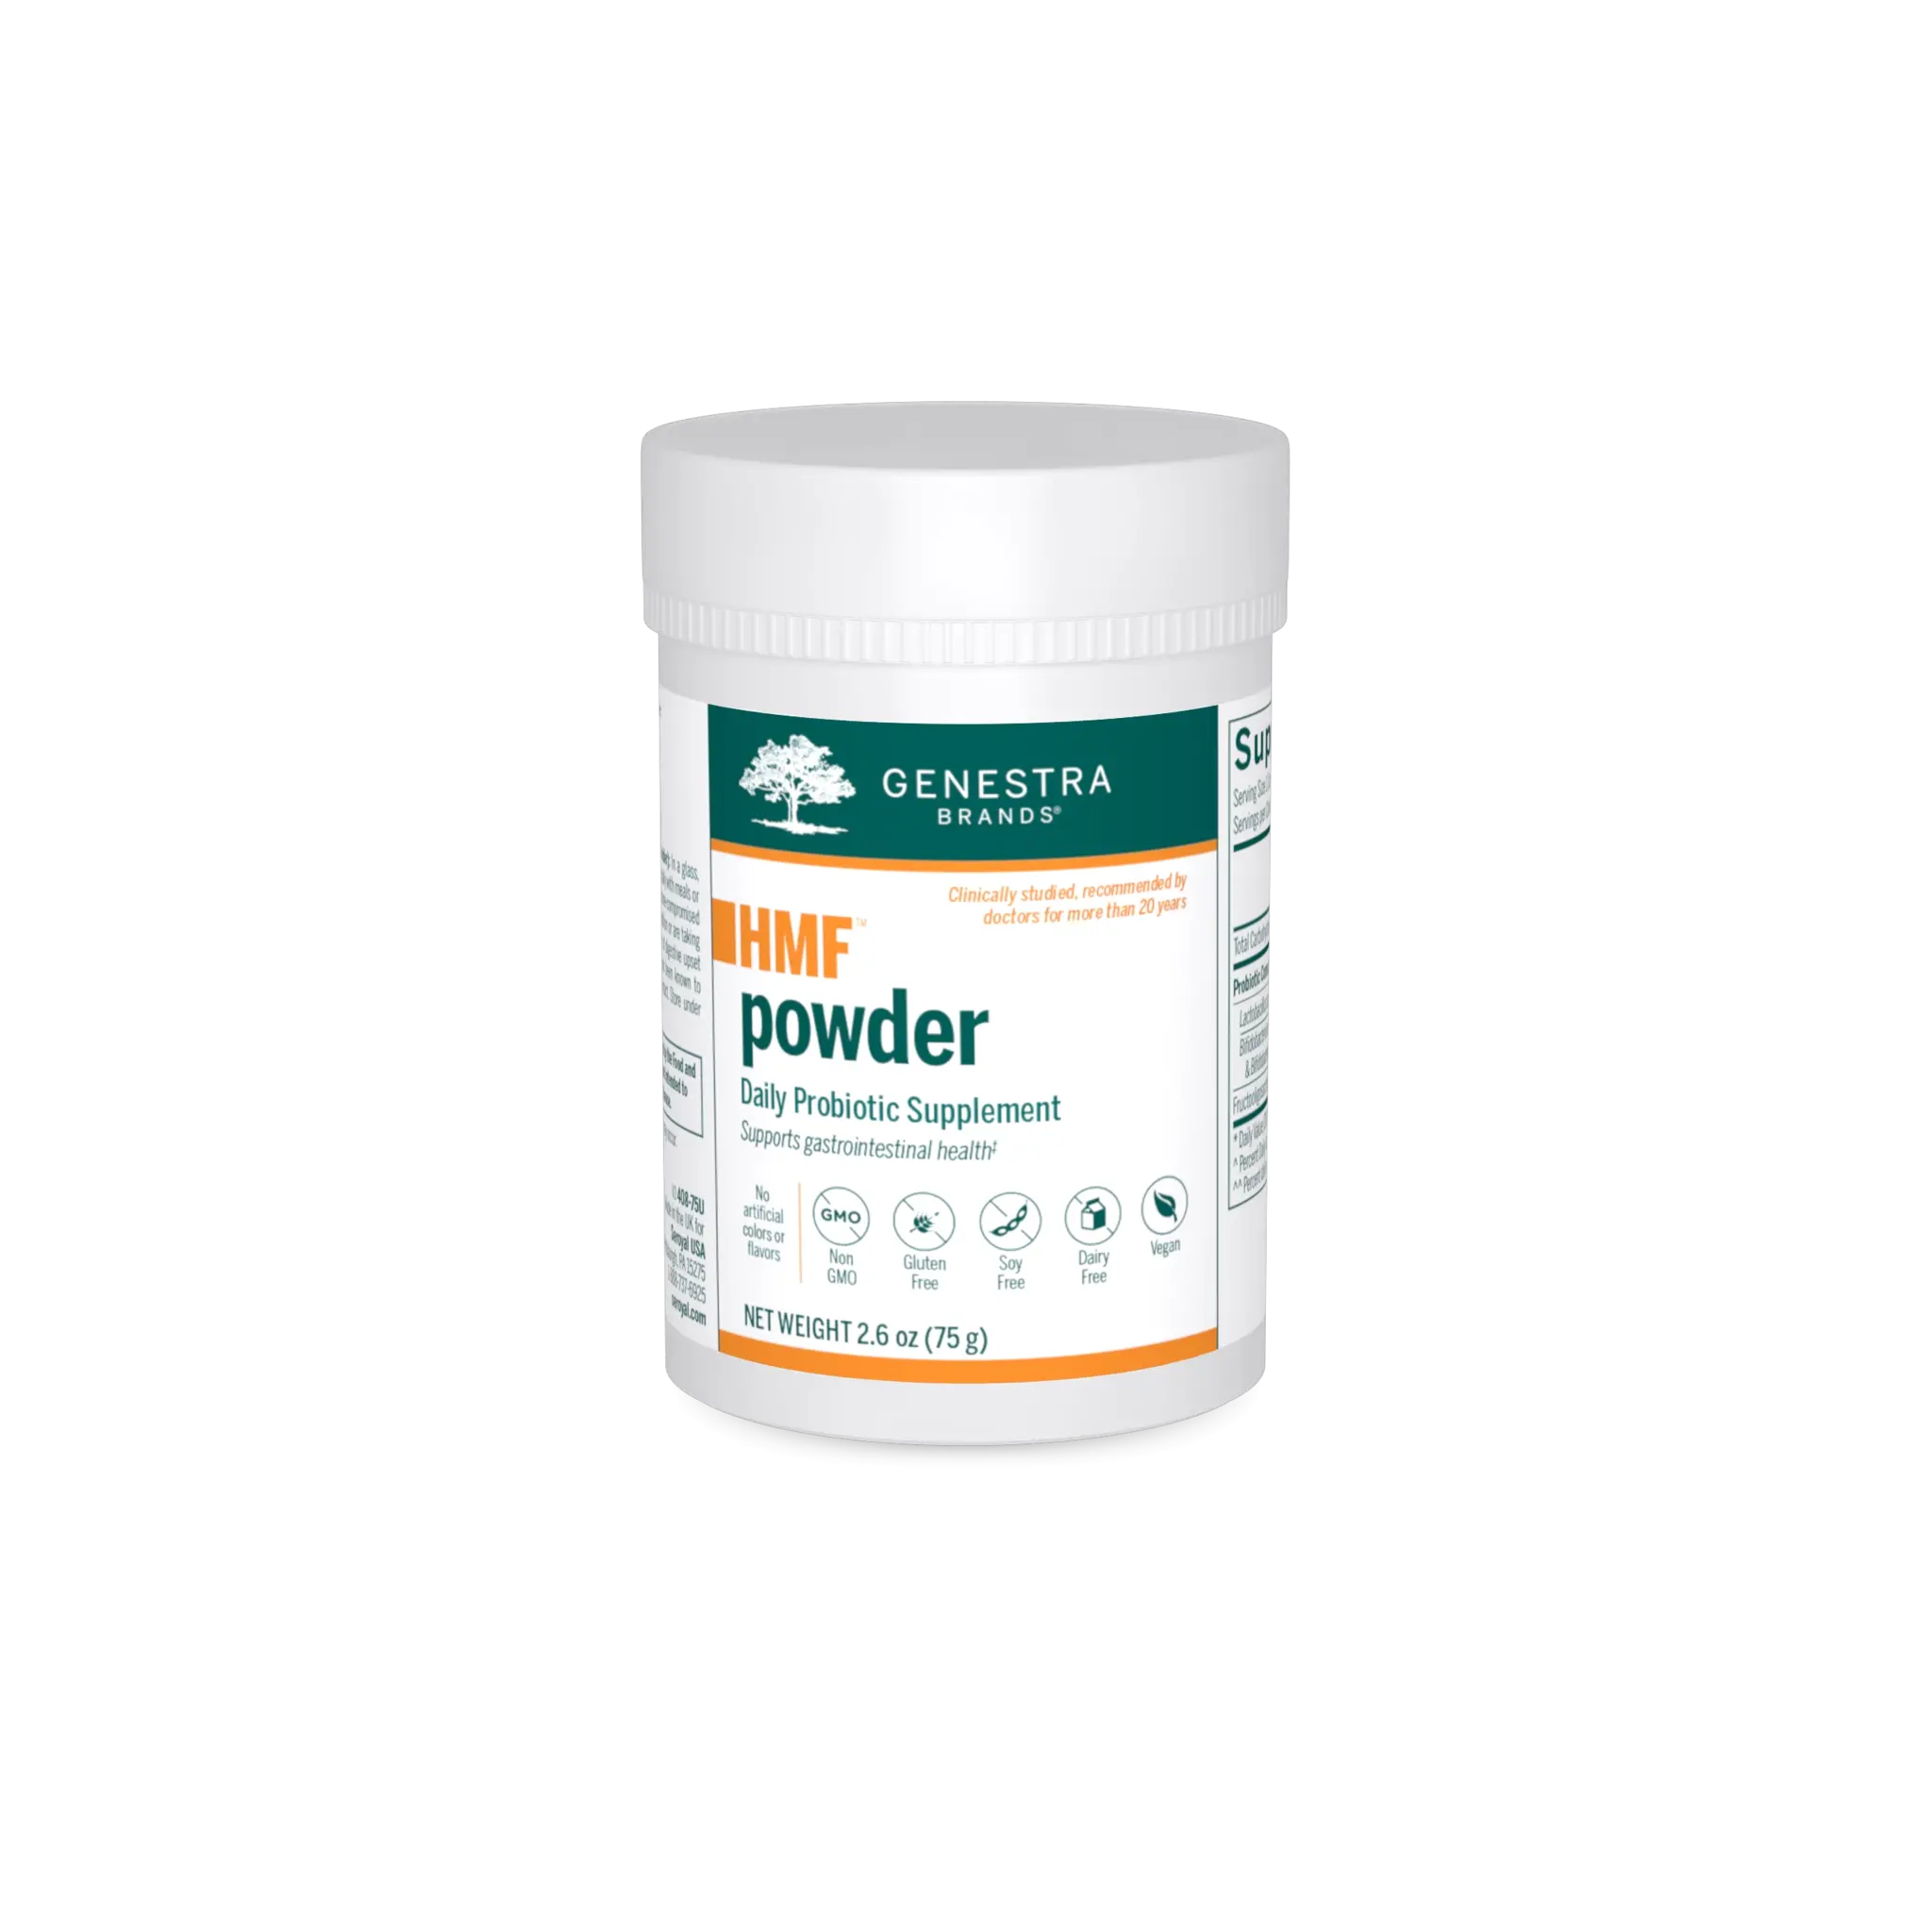 Genestra HMF Powder Probiotic Formula 60g